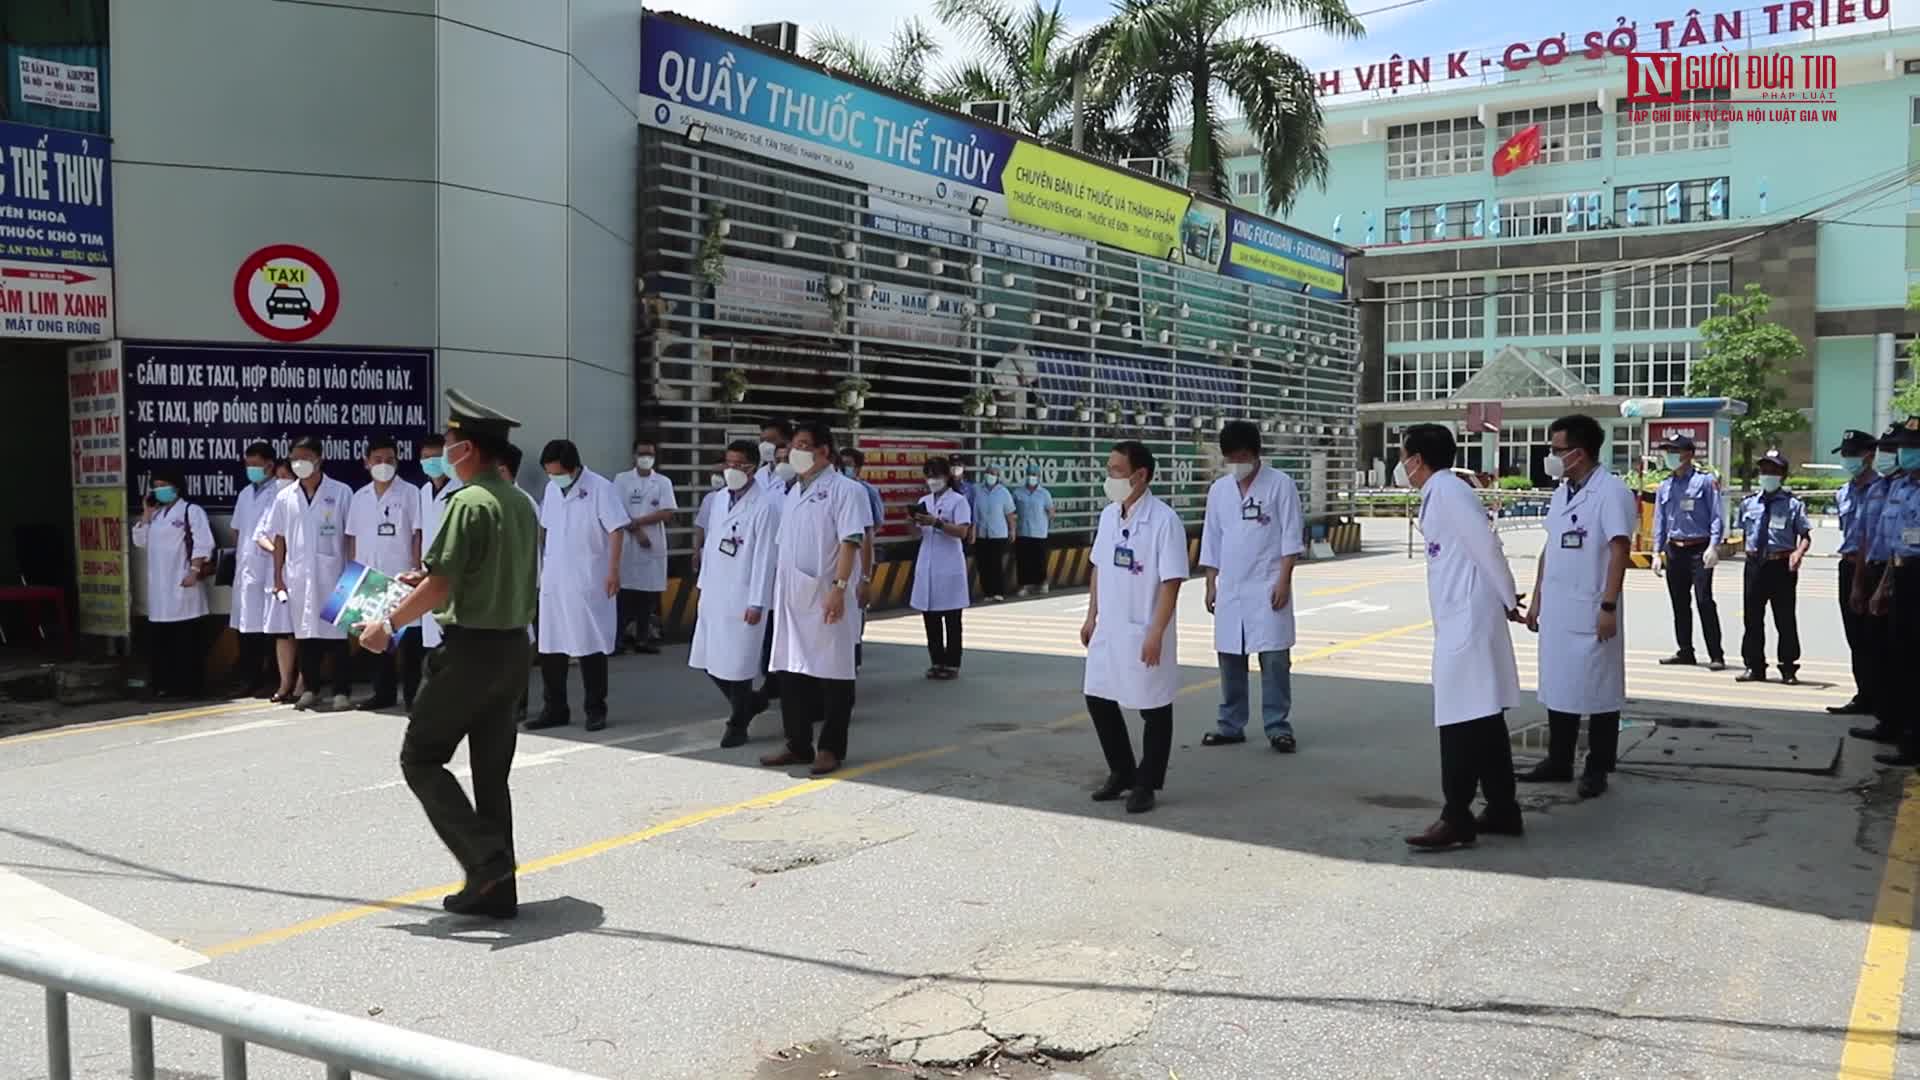 Sự kiện - Dỡ phong toả bệnh viện K cơ sở Tân Triều (Hình 16).